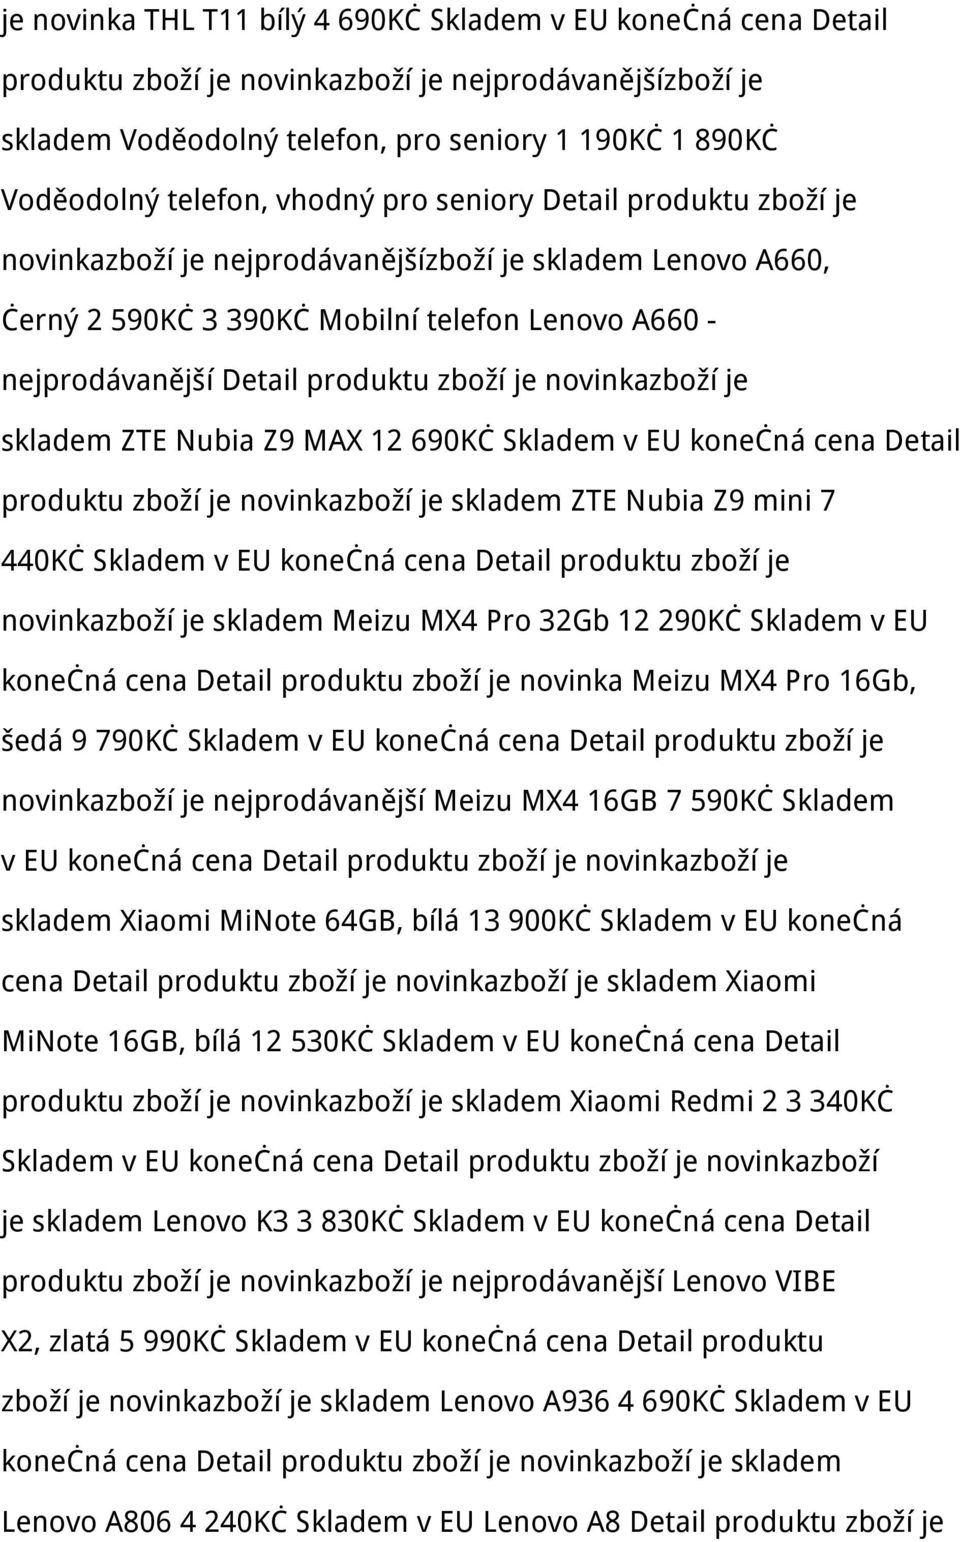 novinkazboží je skladem ZTE Nubia Z9 MAX 12 690Kč Skladem v EU konečná cena Detail produktu zboží je novinkazboží je skladem ZTE Nubia Z9 mini 7 440Kč Skladem v EU konečná cena Detail produktu zboží